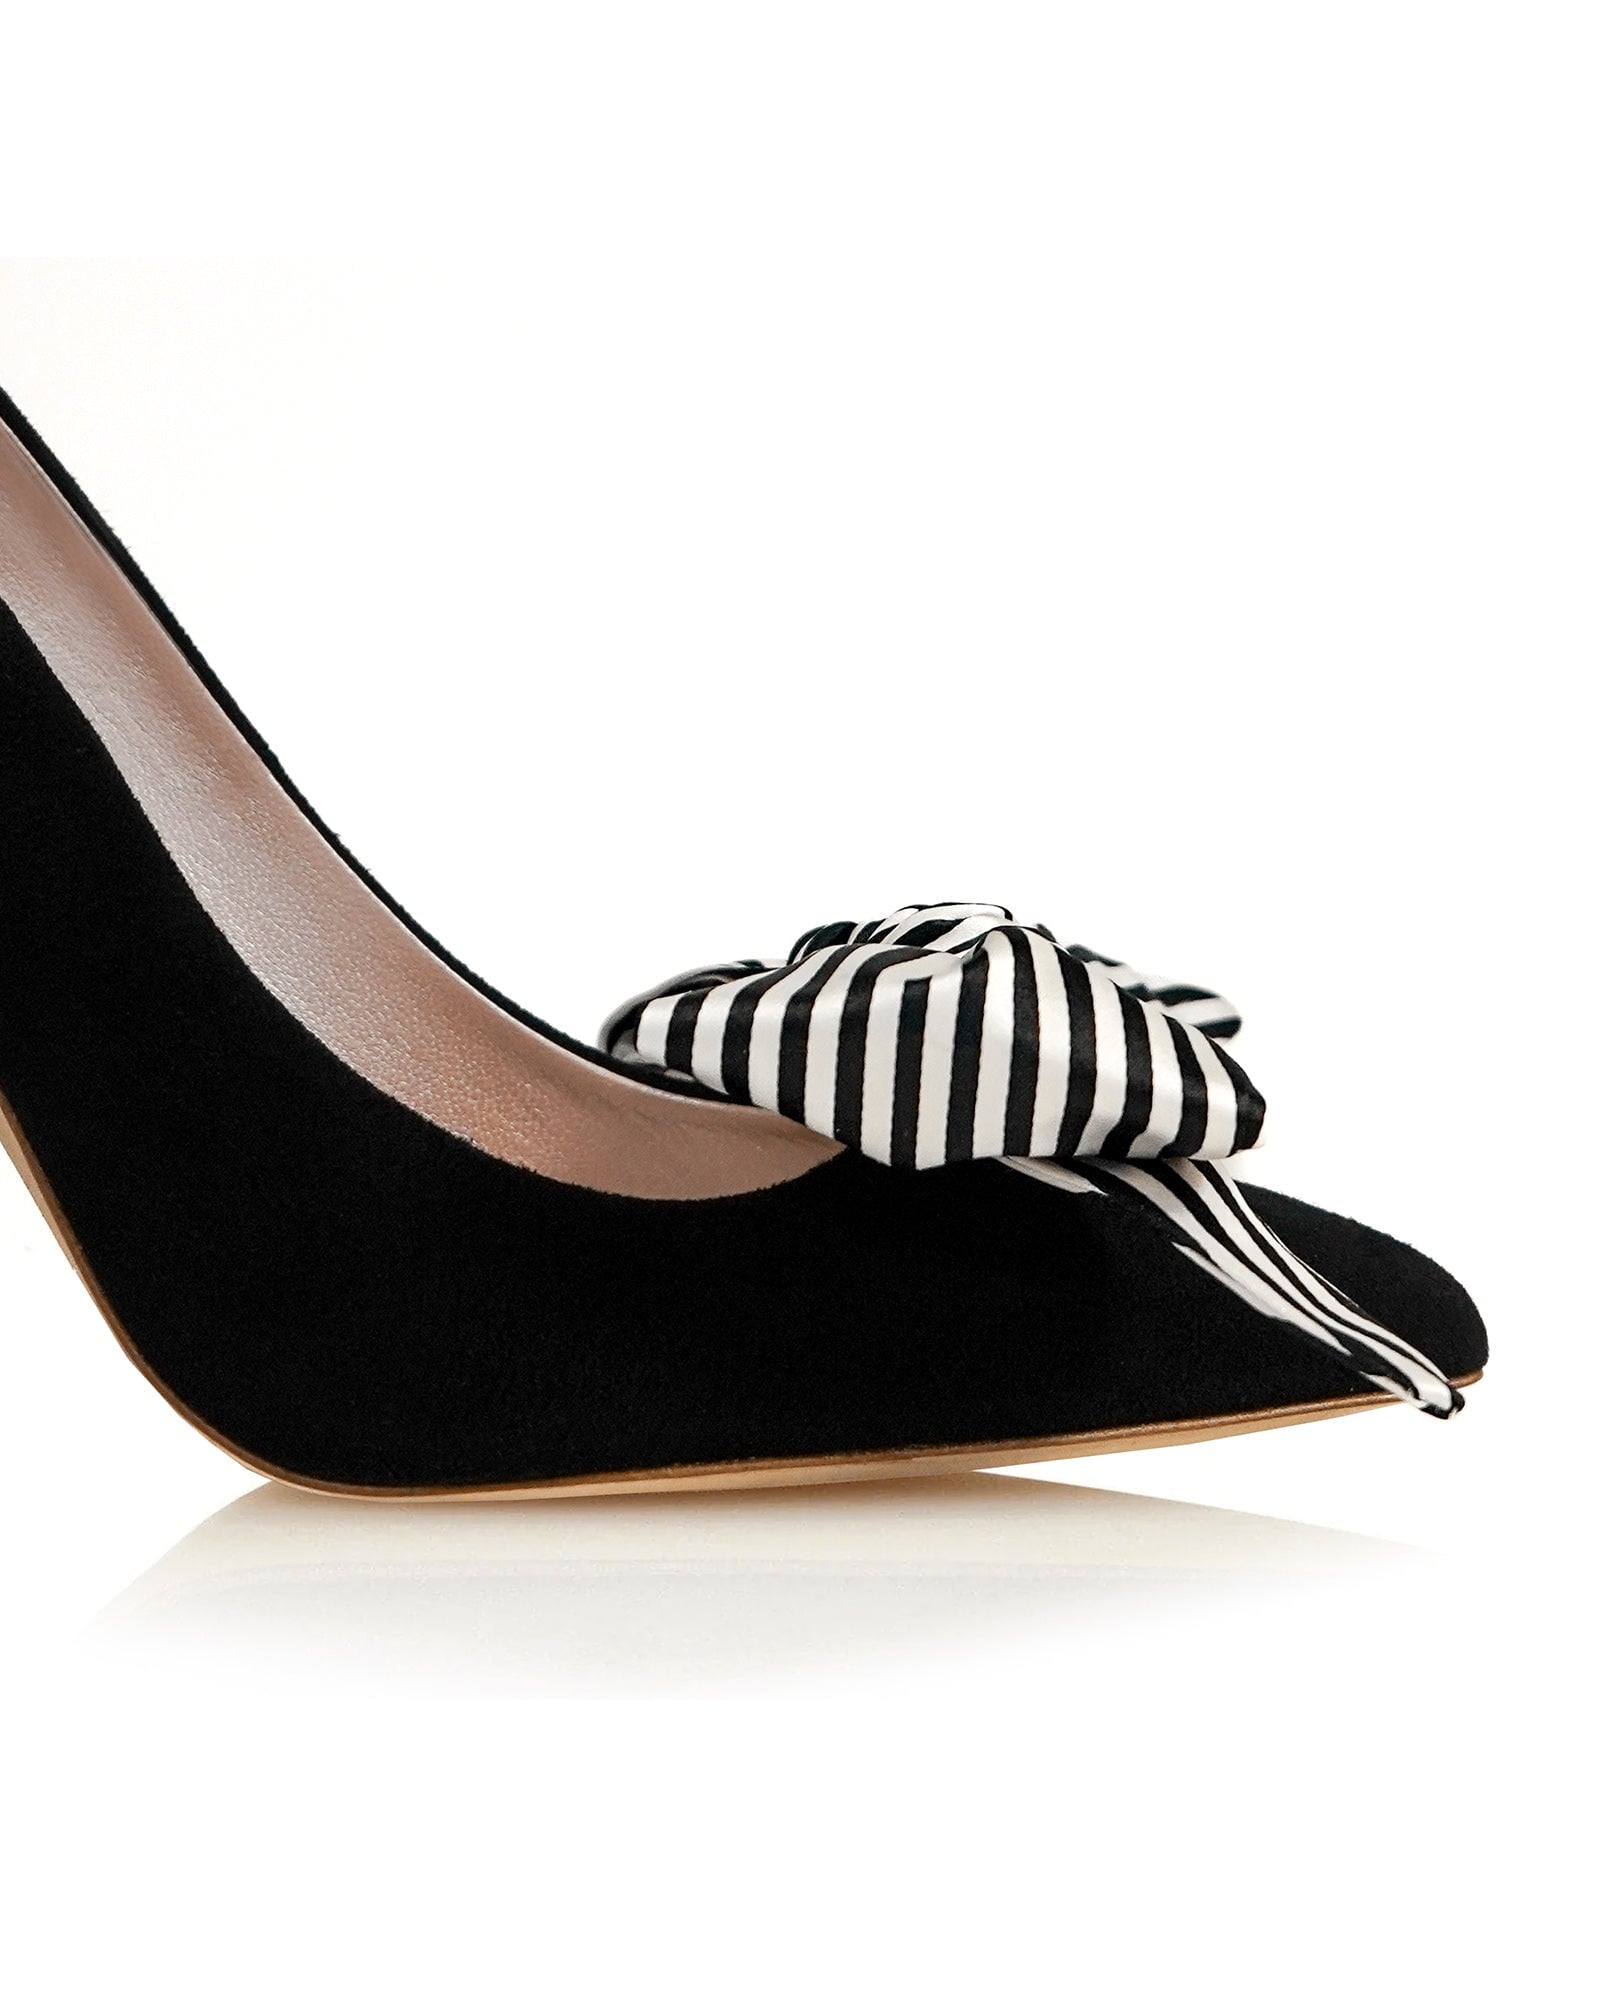 Florence Liquorice stripe Bow Shoe Clips Shoe Clip Print Satin Shoe Clips  image